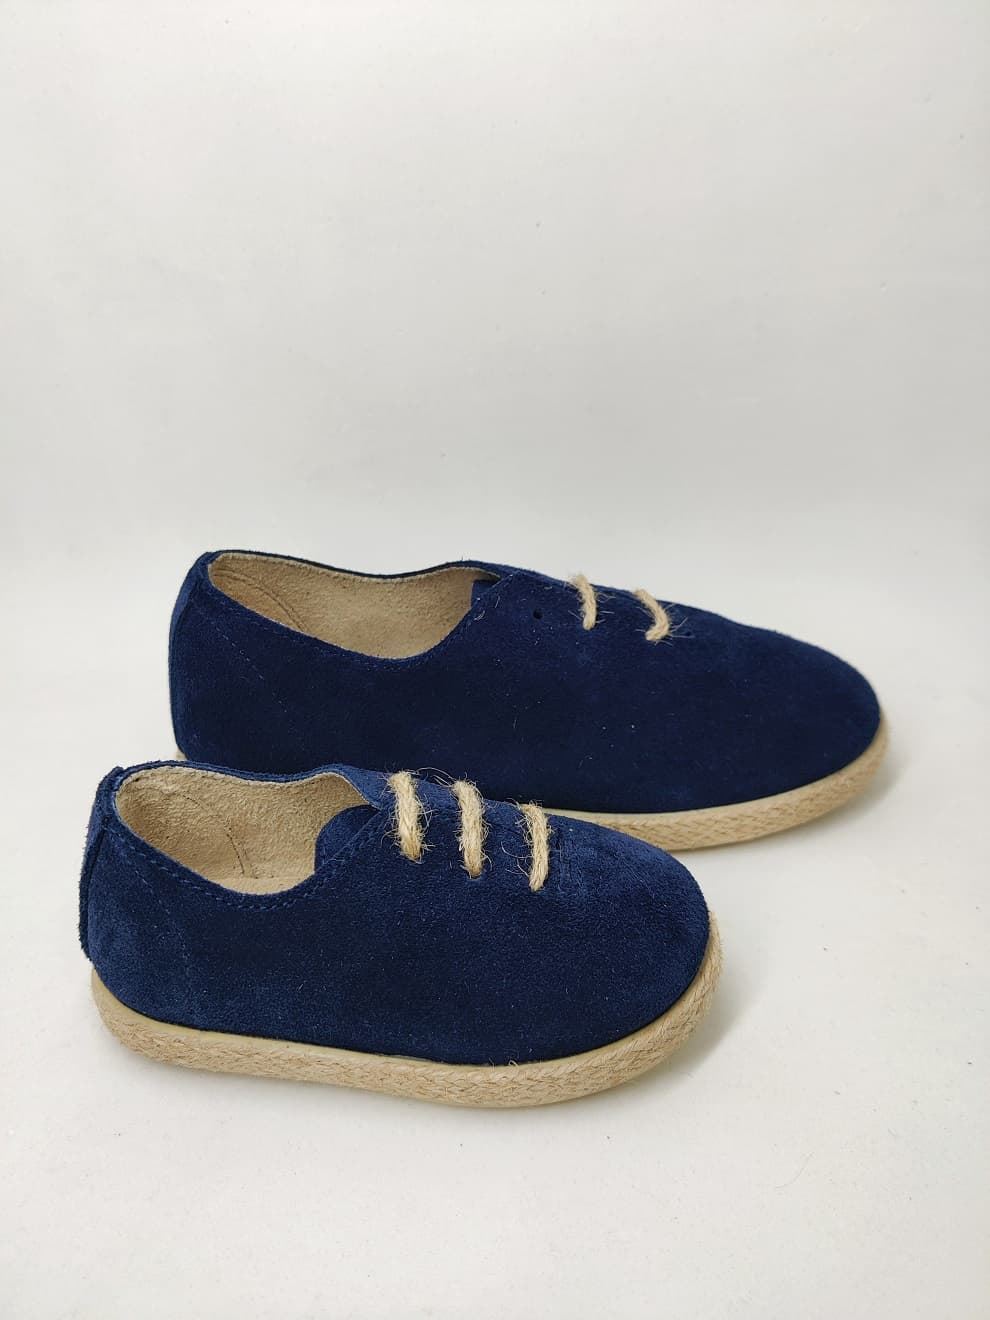 Batilas Navy Blue Suede Children's Jute Style Shoe - Image 4